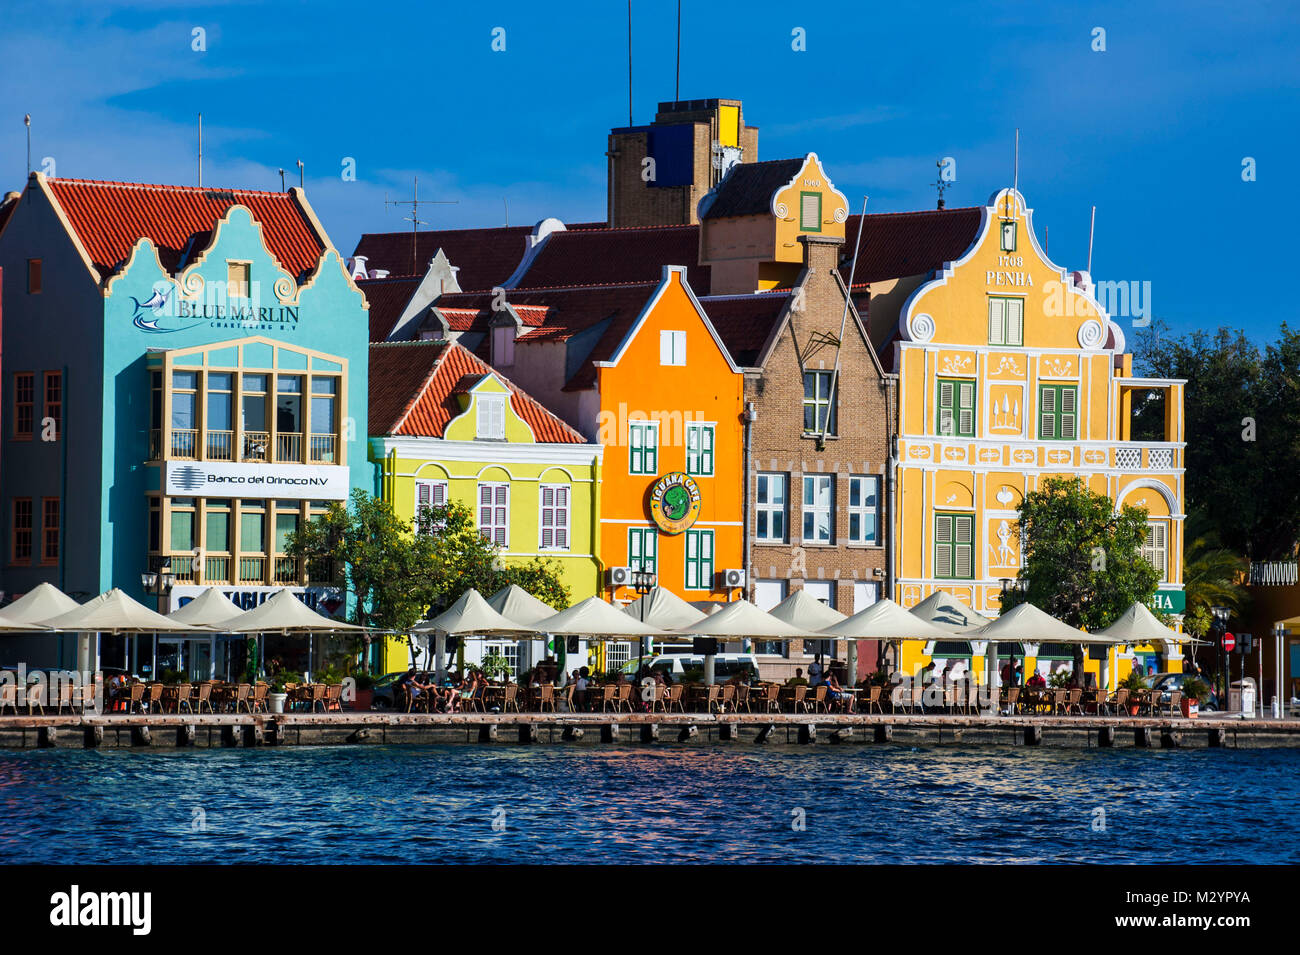 Die niederländische Häuser an der Sint Annabaai in Wilemstad Stadt, der Hauptstadt von Curacao, Niederländische Antillen, ABC-Inseln, Karibik Stockfoto